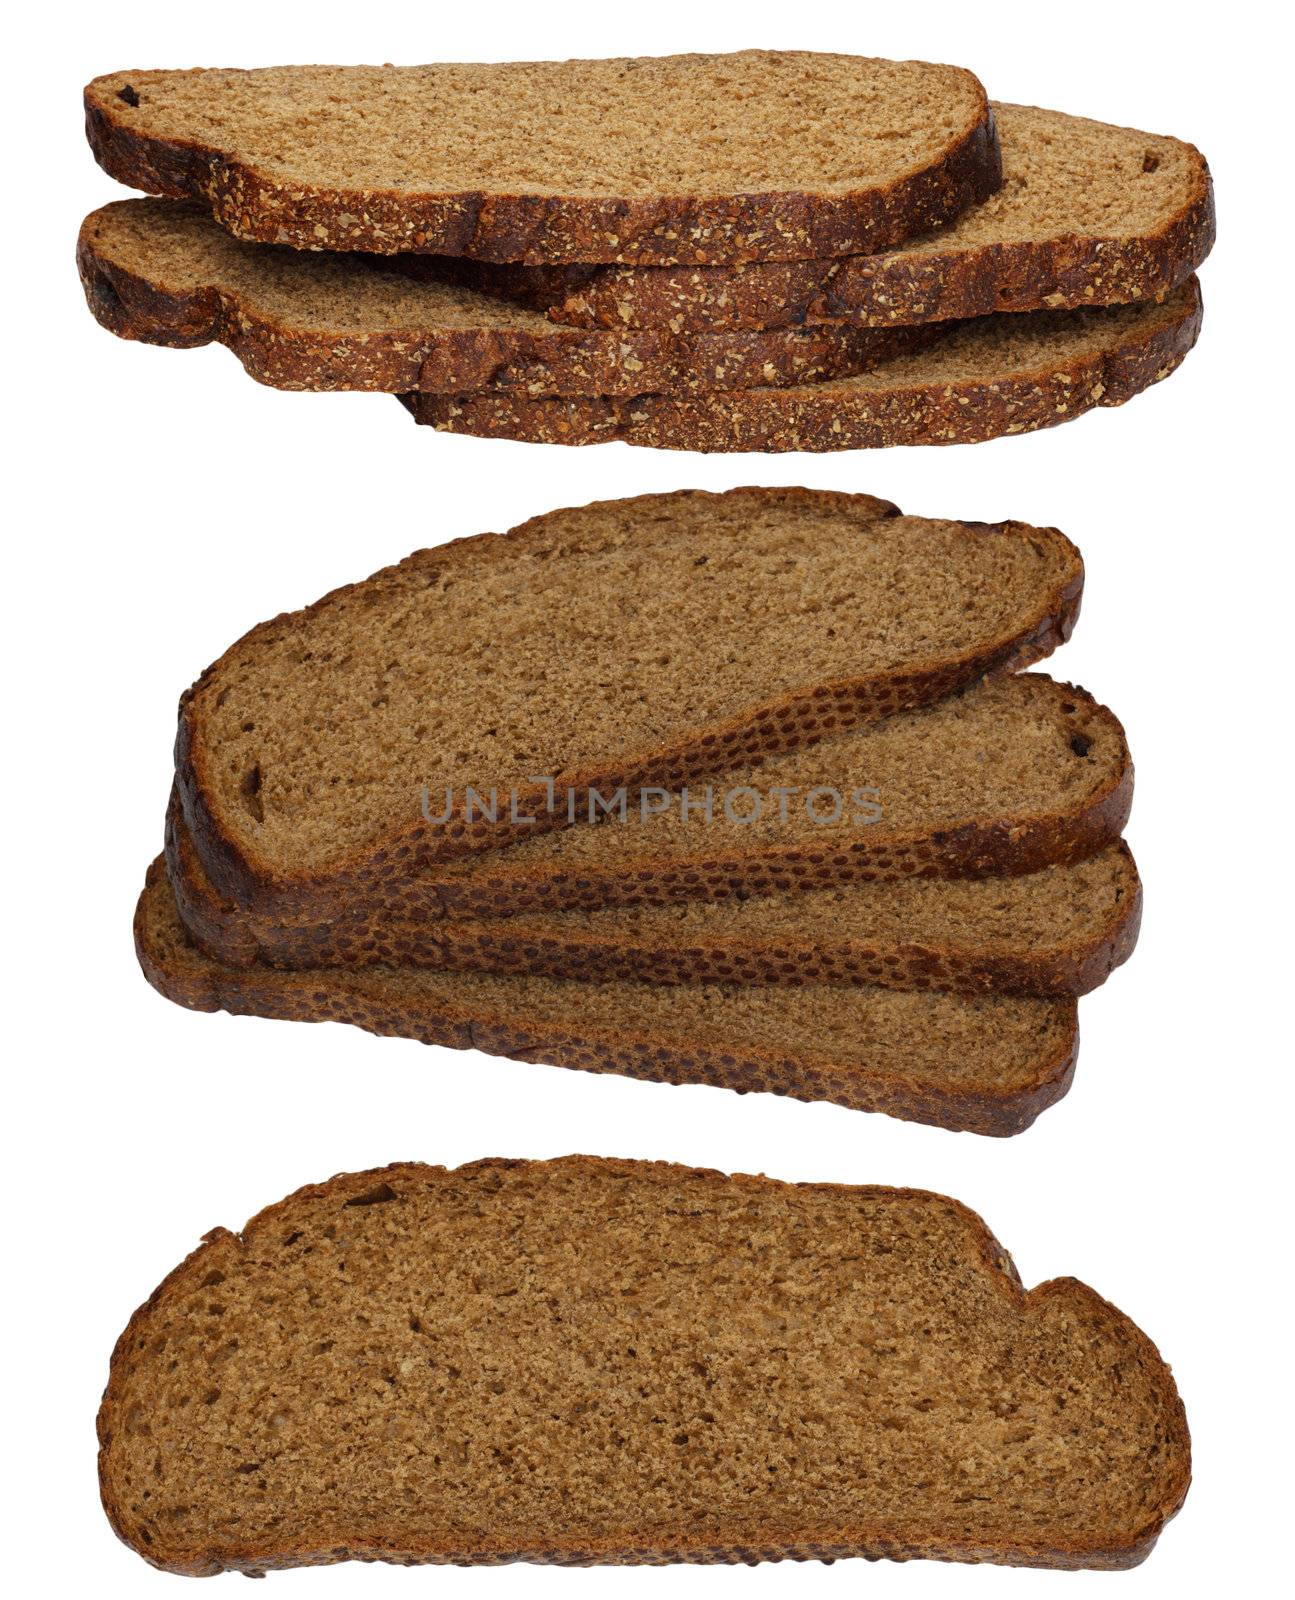 rye bread on a white background by schankz